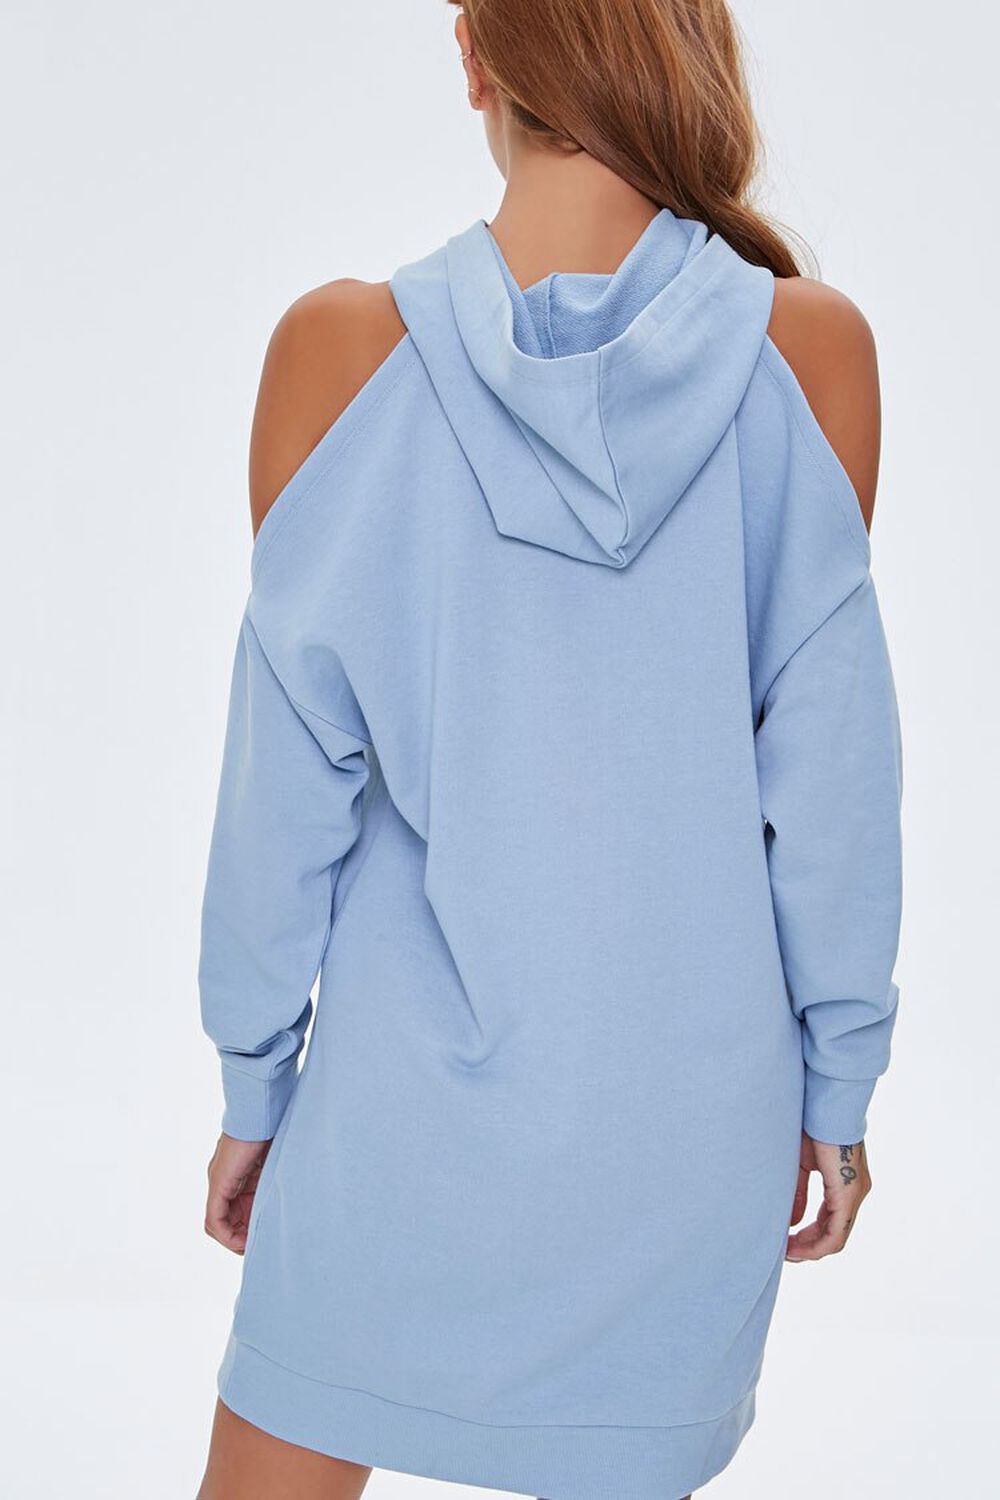 DUSTY BLUE Open-Shoulder Hoodie Dress, image 3